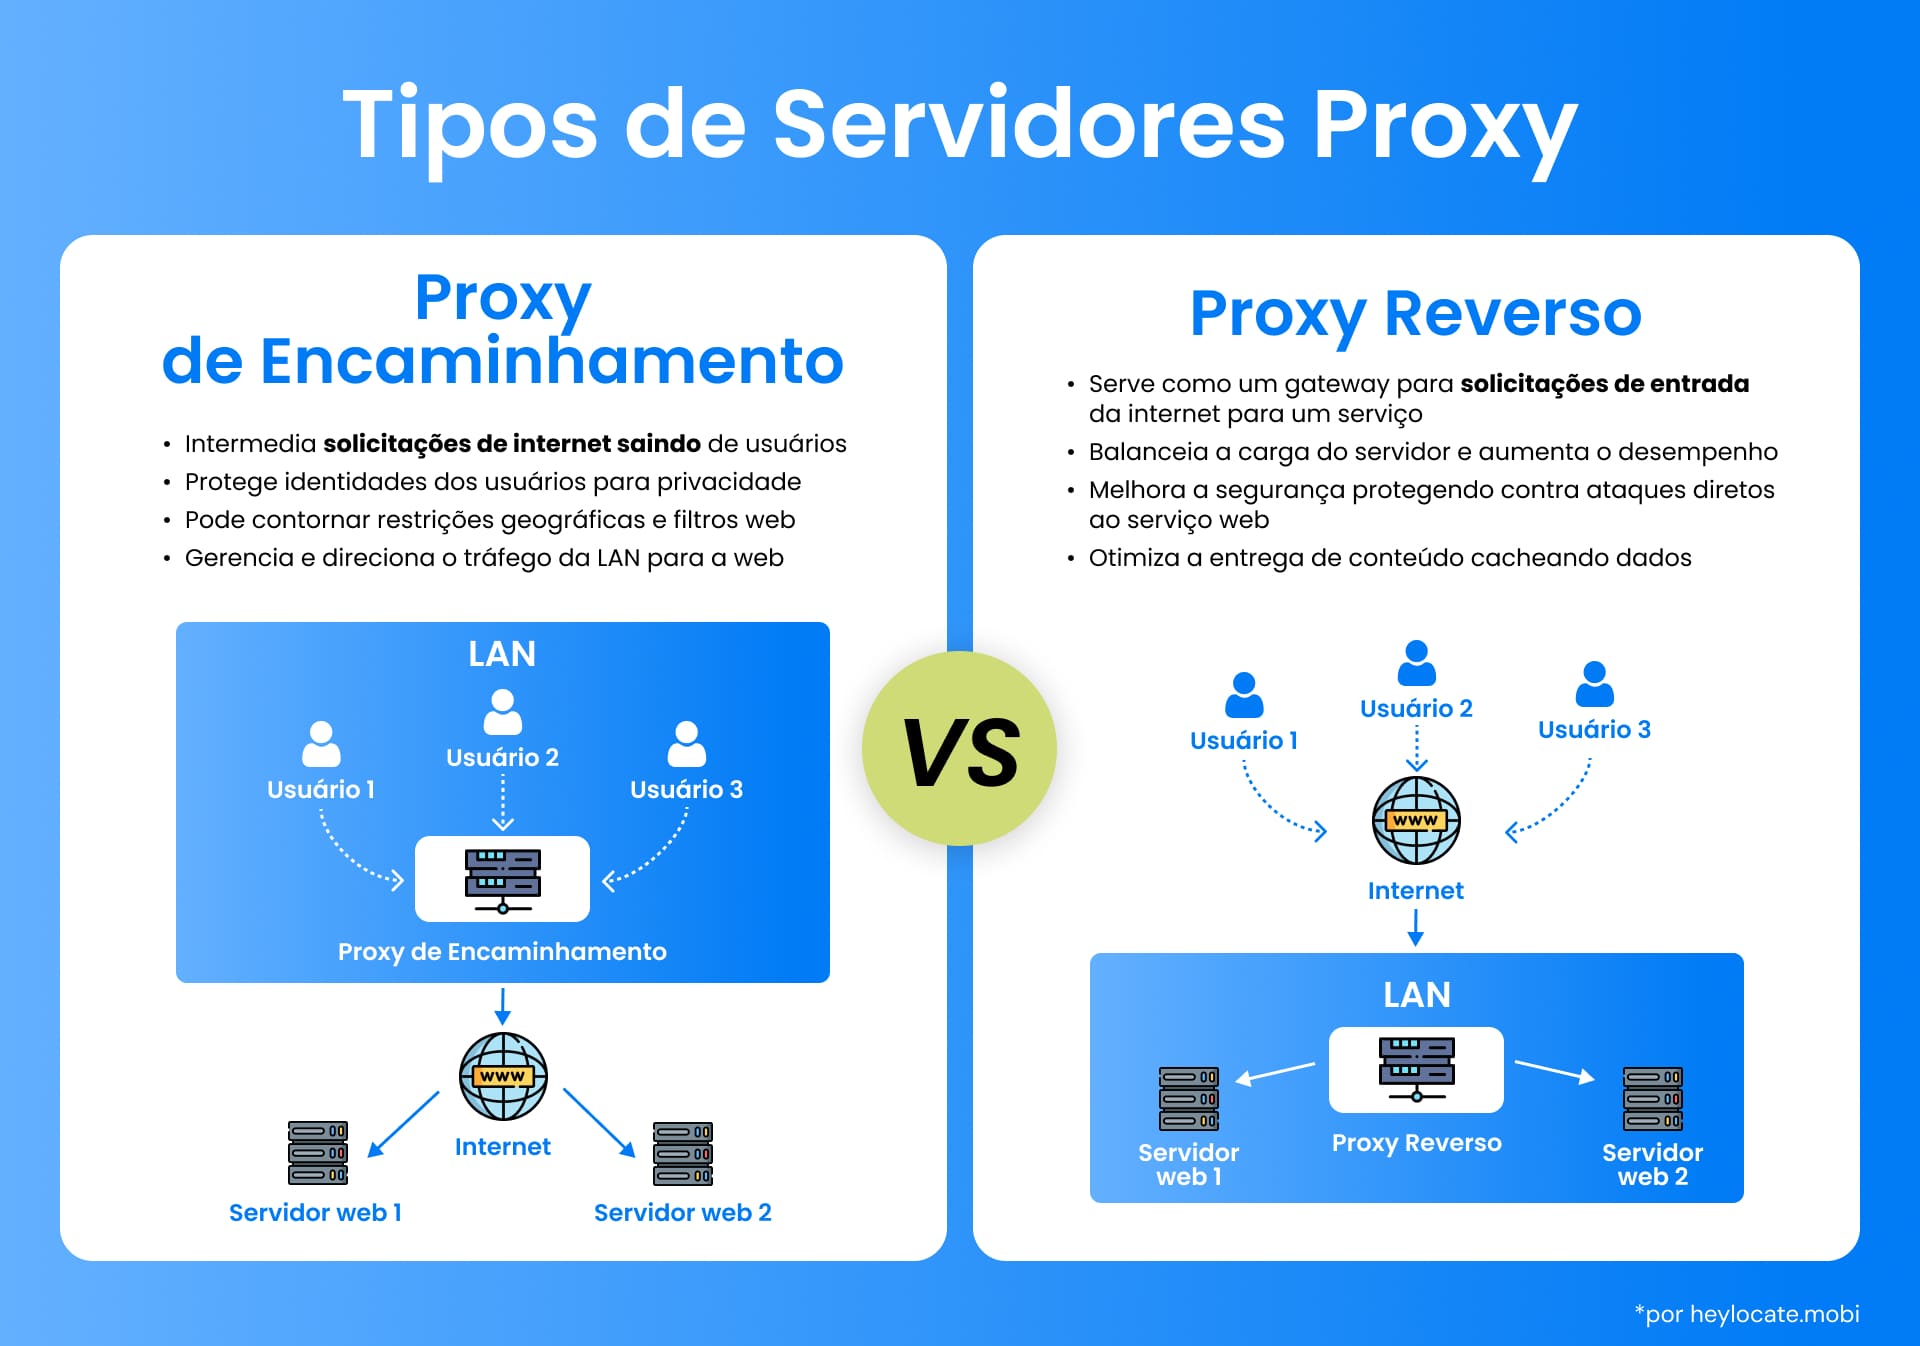 Uma comparação visual entre os servidores proxy direto e reverso, ilustrando suas diferentes funções na arquitetura de rede e na comunicação pela Internet